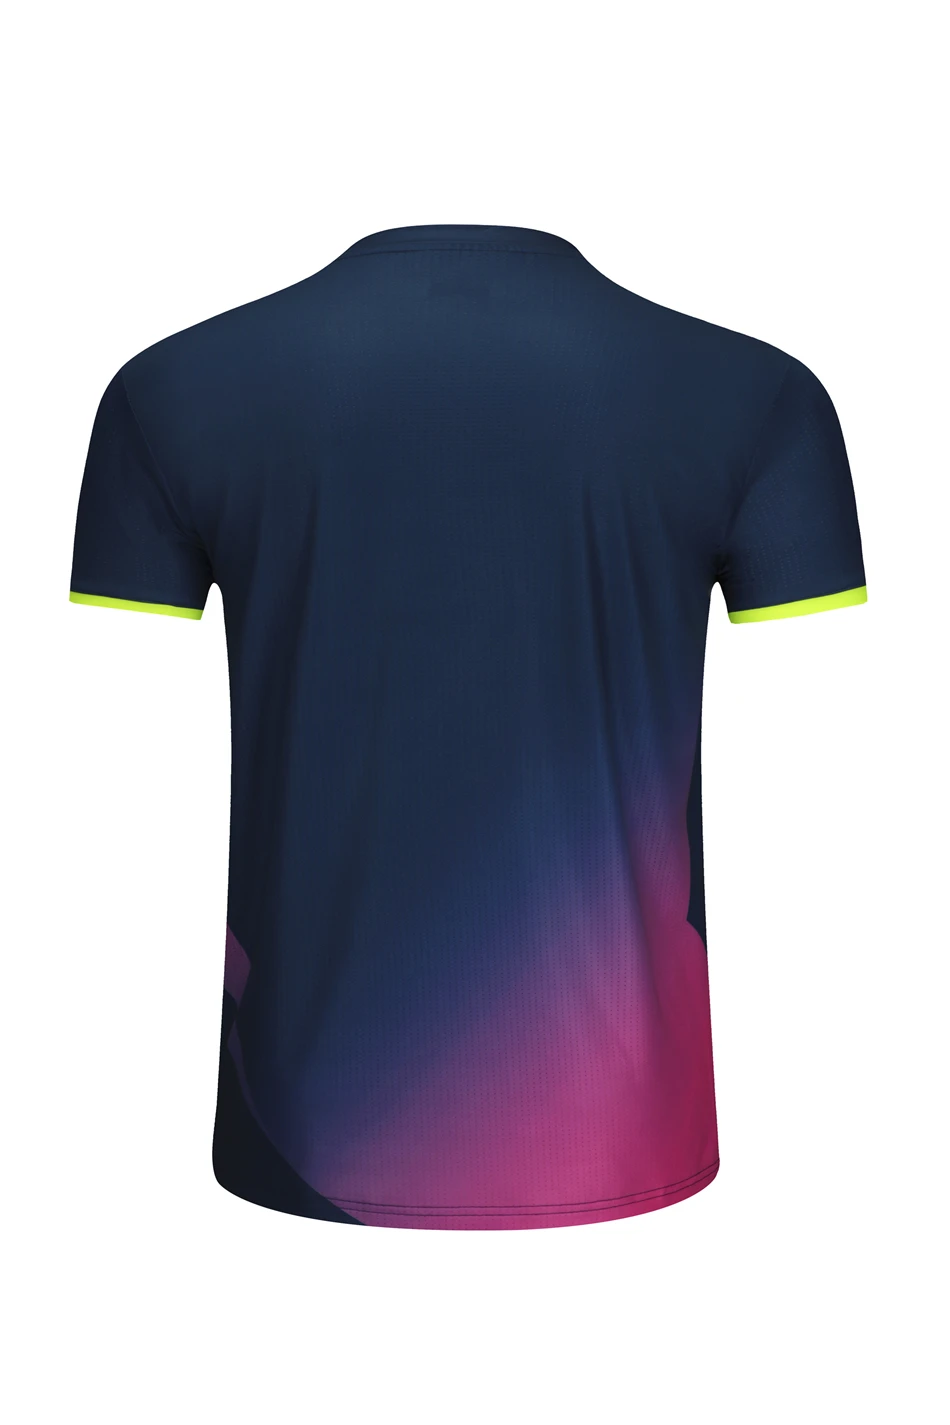 Новая рубашка для бадминтона для мужчин и женщин, быстросохнущая и дышащая рубашка для бадминтона для мужчин и женщин, рубашка для настольного тенниса+ шорты